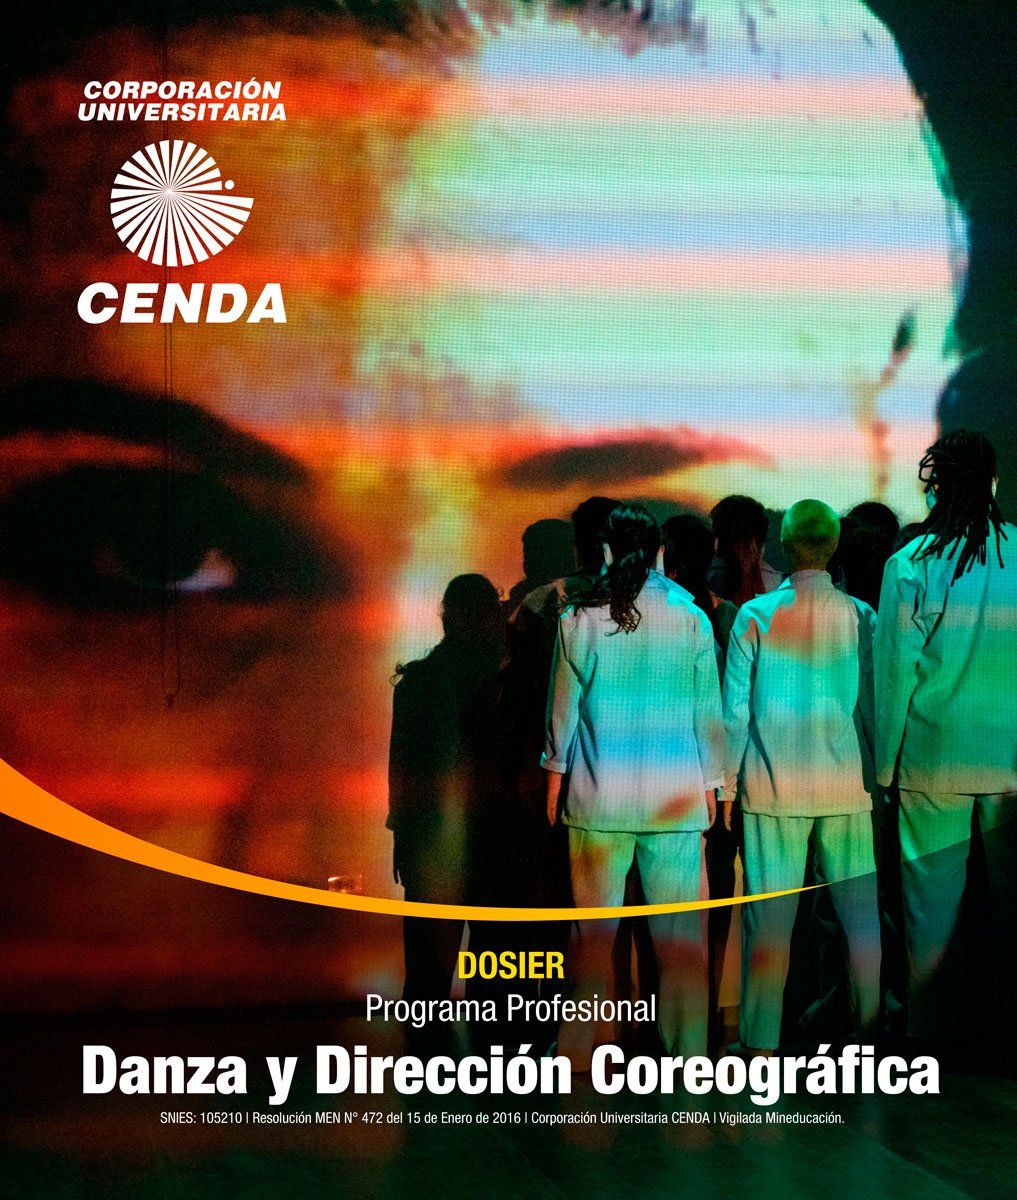 Dosier: Programa Profesional Danza y Dirección Coreográfica